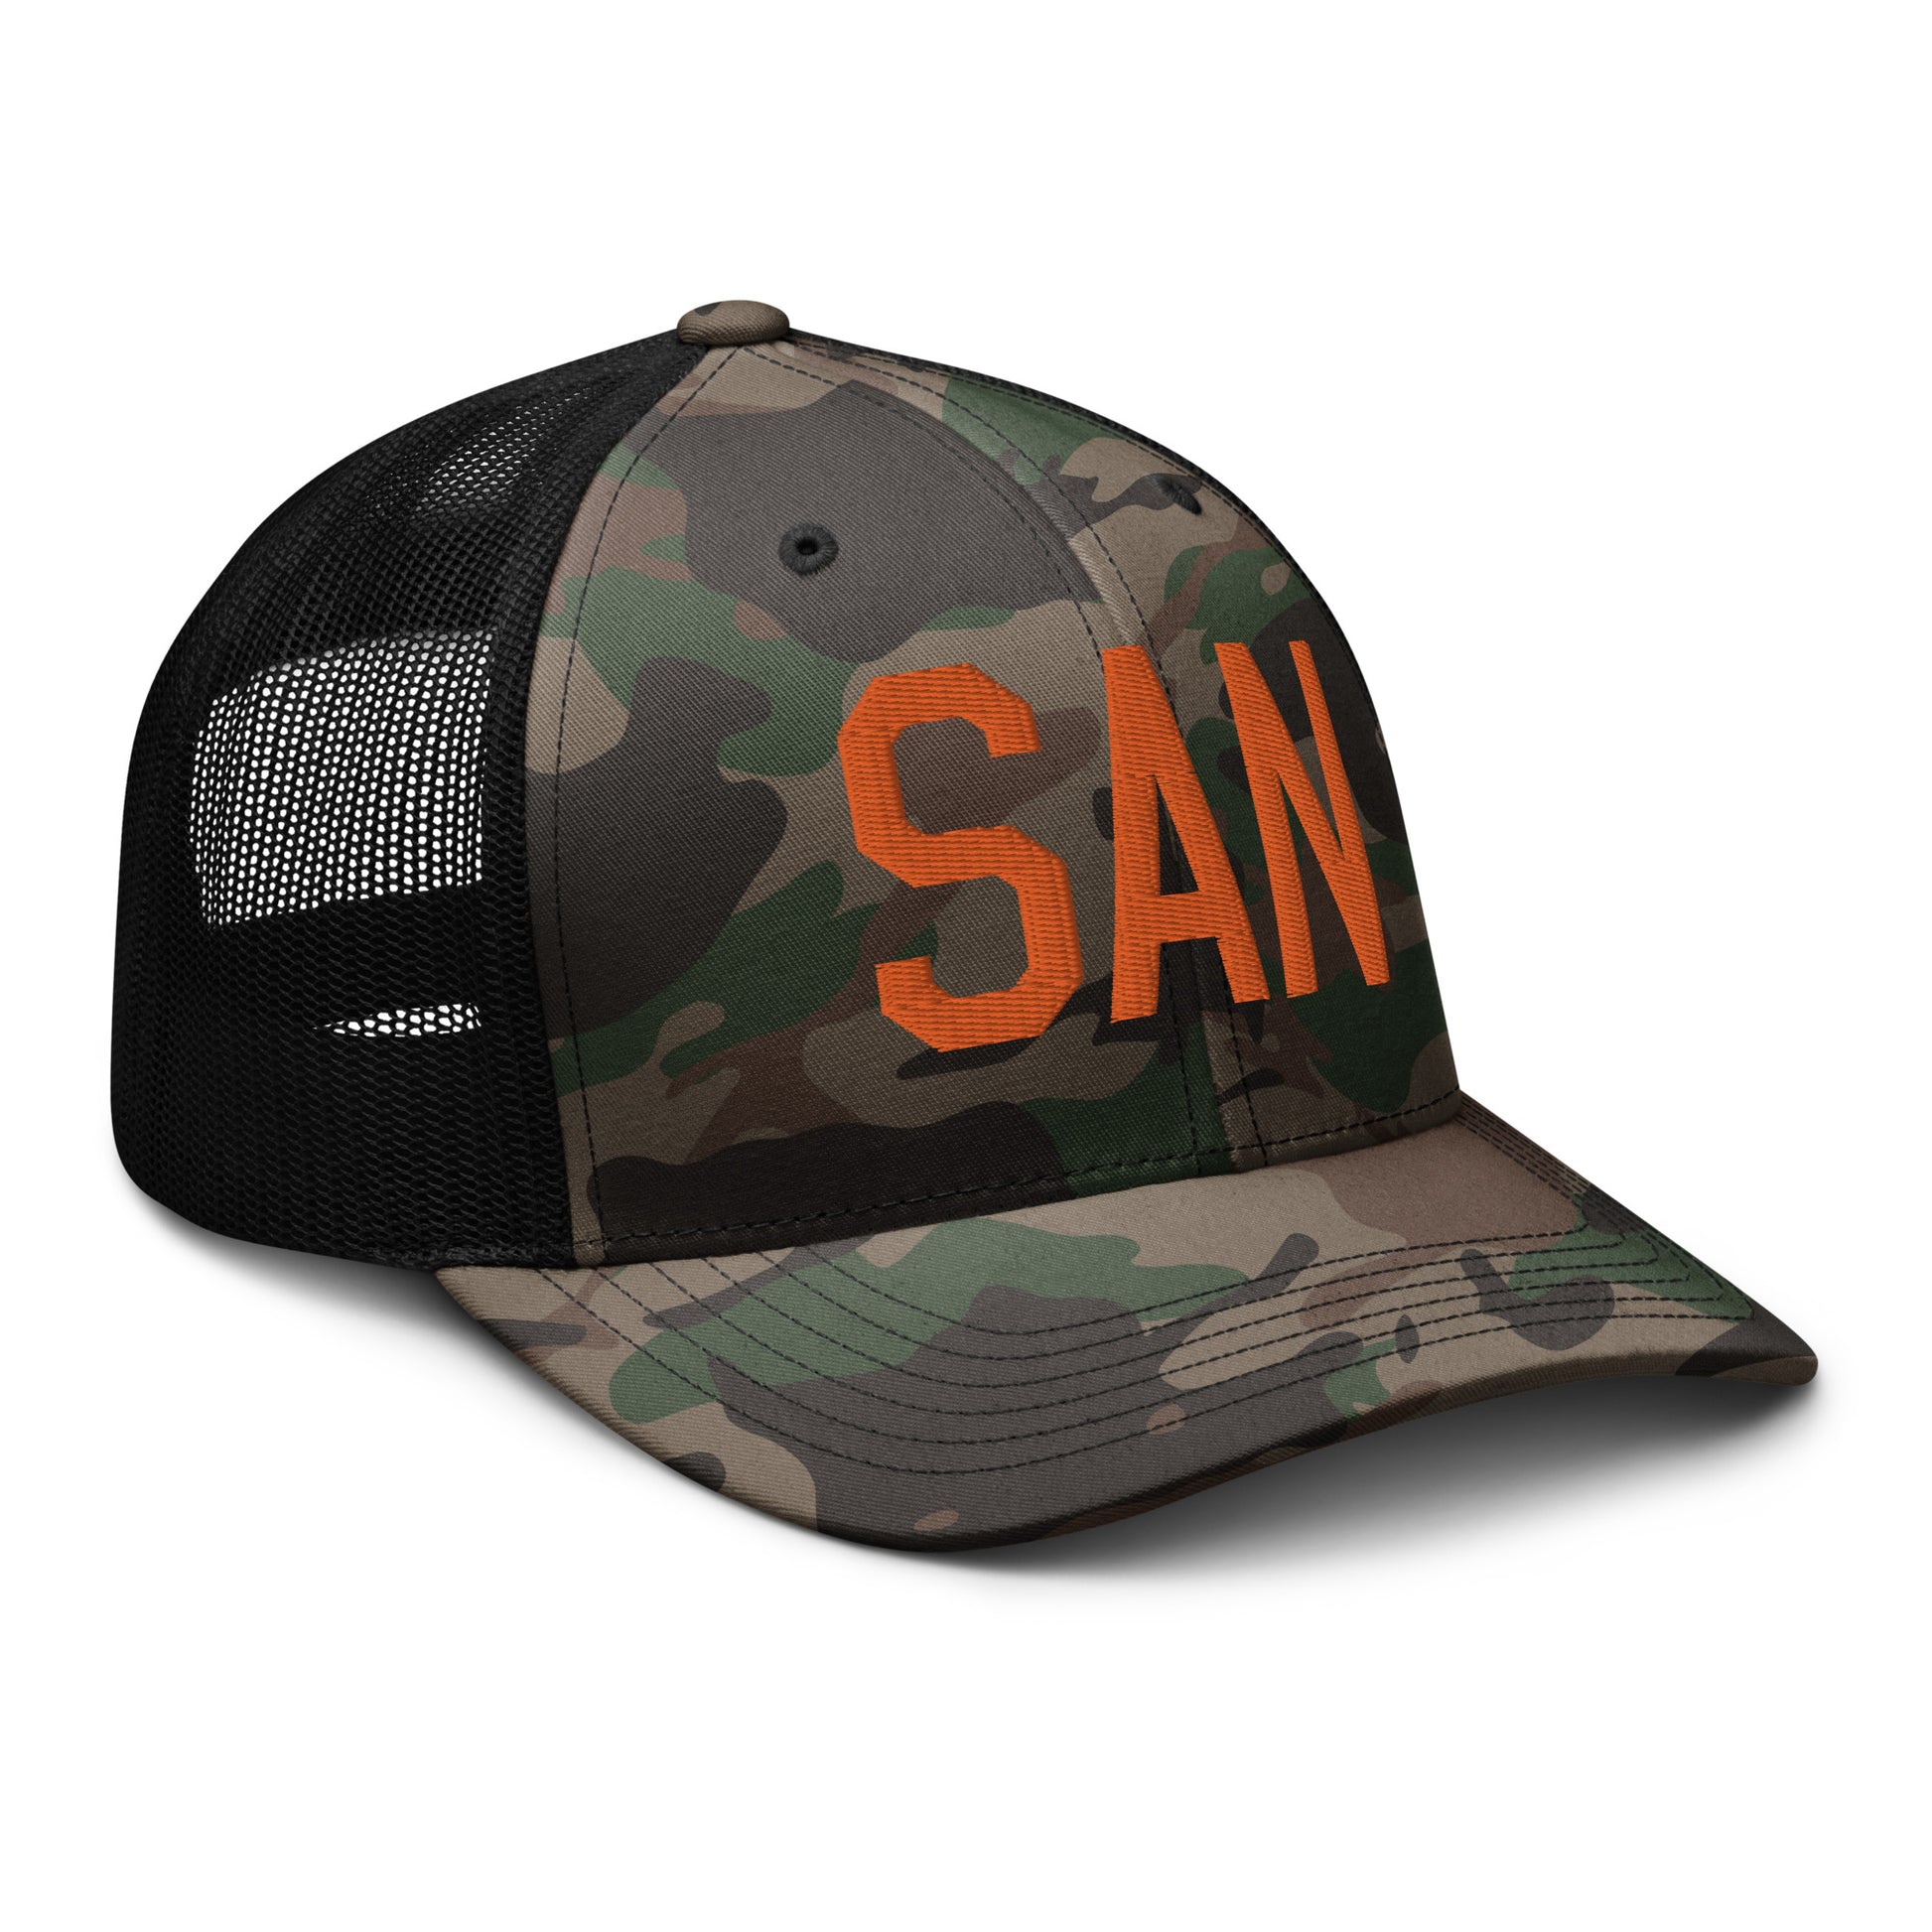 Airport Code Camouflage Trucker Hat - Orange • SAN San Diego • YHM Designs - Image 12